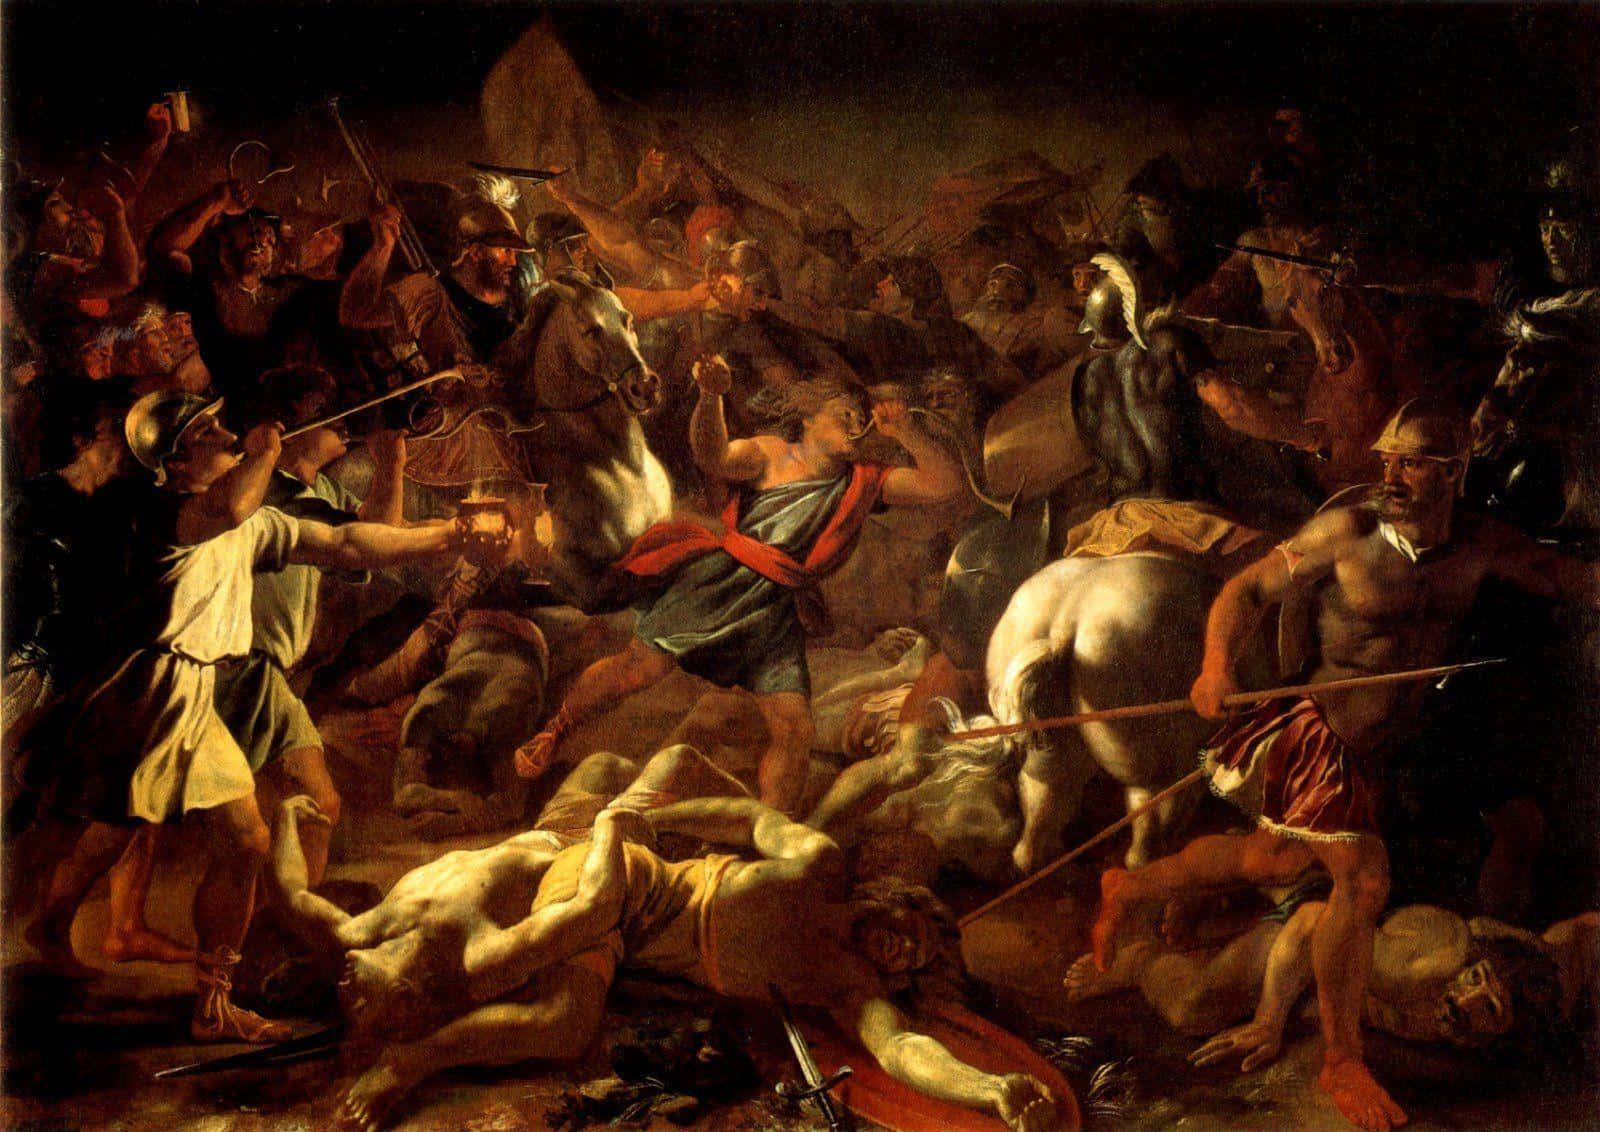 Klassisk kunst Battle Of Gideon mod Midiantes maleri: Tag med til fortiden i stil med den stemningsfulde maleri af kampen mellem Gideon og Midianiterne. Wallpaper